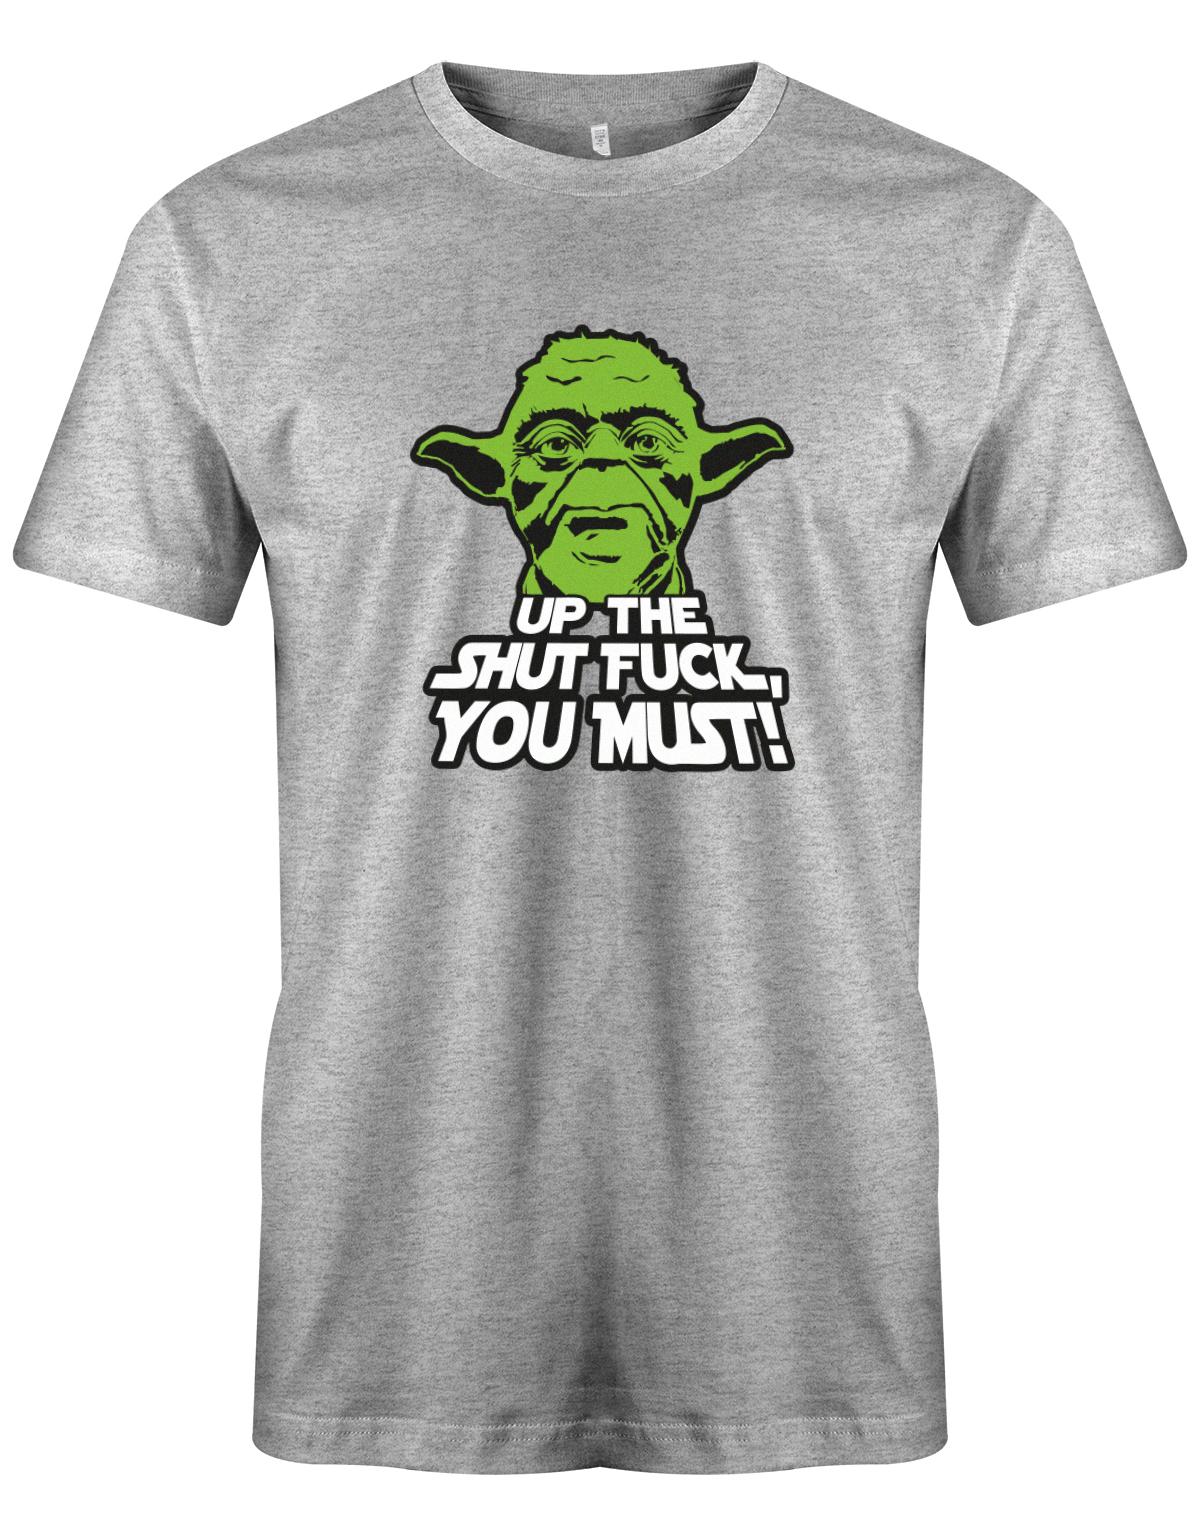 Up-The-Shut-fuck-you-must-Yoda-Shirt-grau